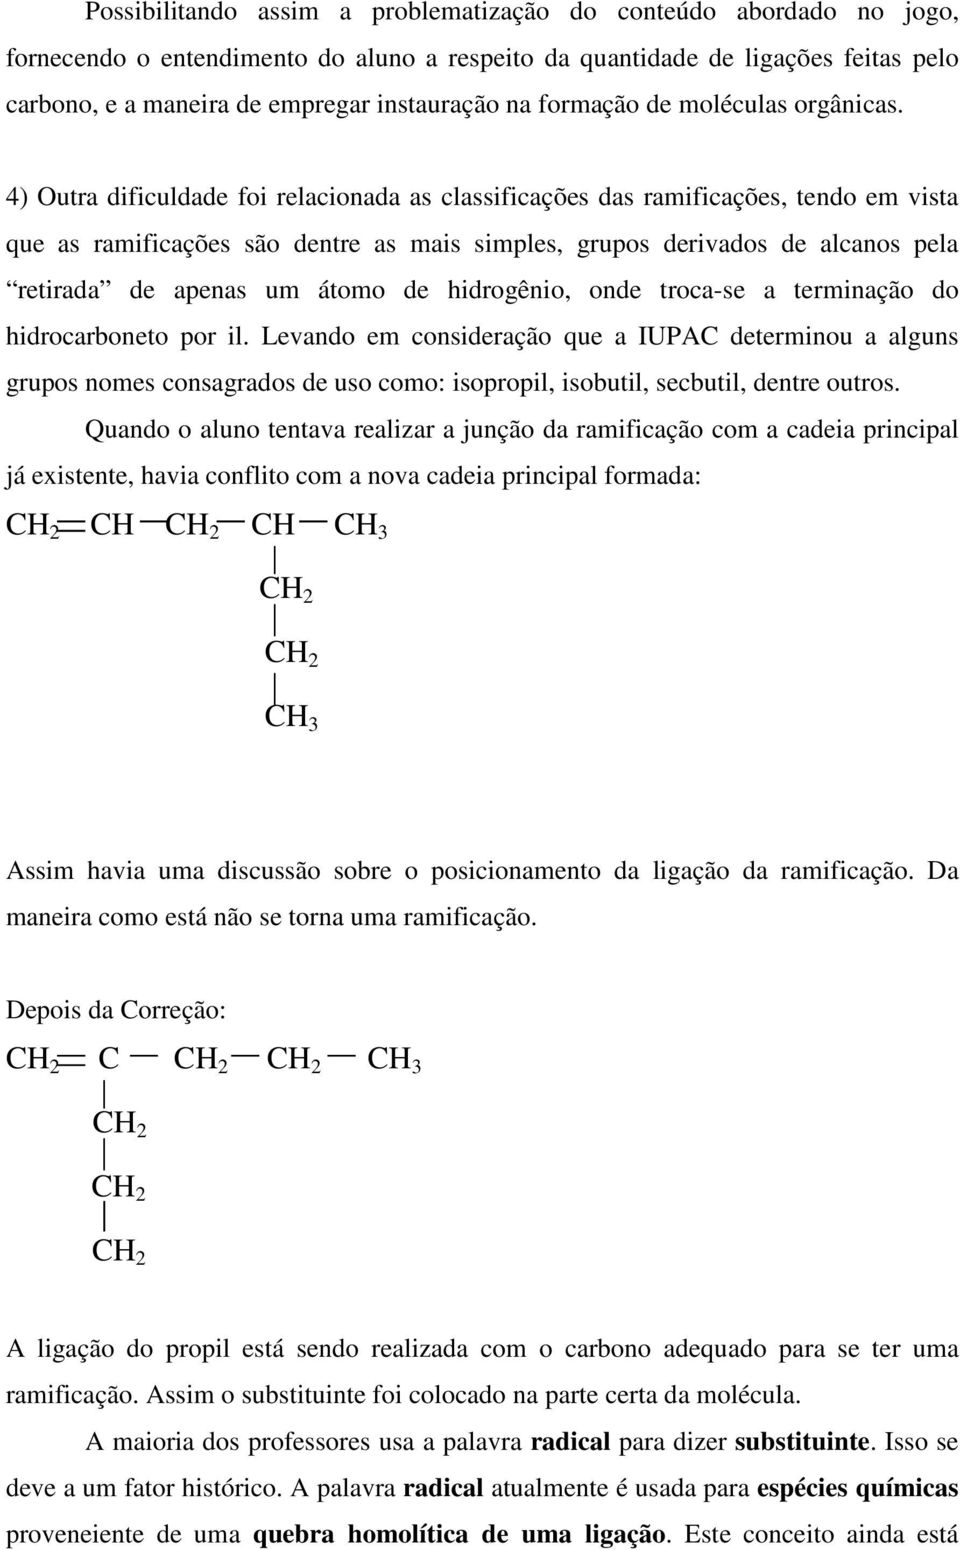 4) Outra dificuldade foi relacionada as classificações das ramificações, tendo em vista que as ramificações são dentre as mais simples, grupos derivados de alcanos pela retirada de apenas um átomo de